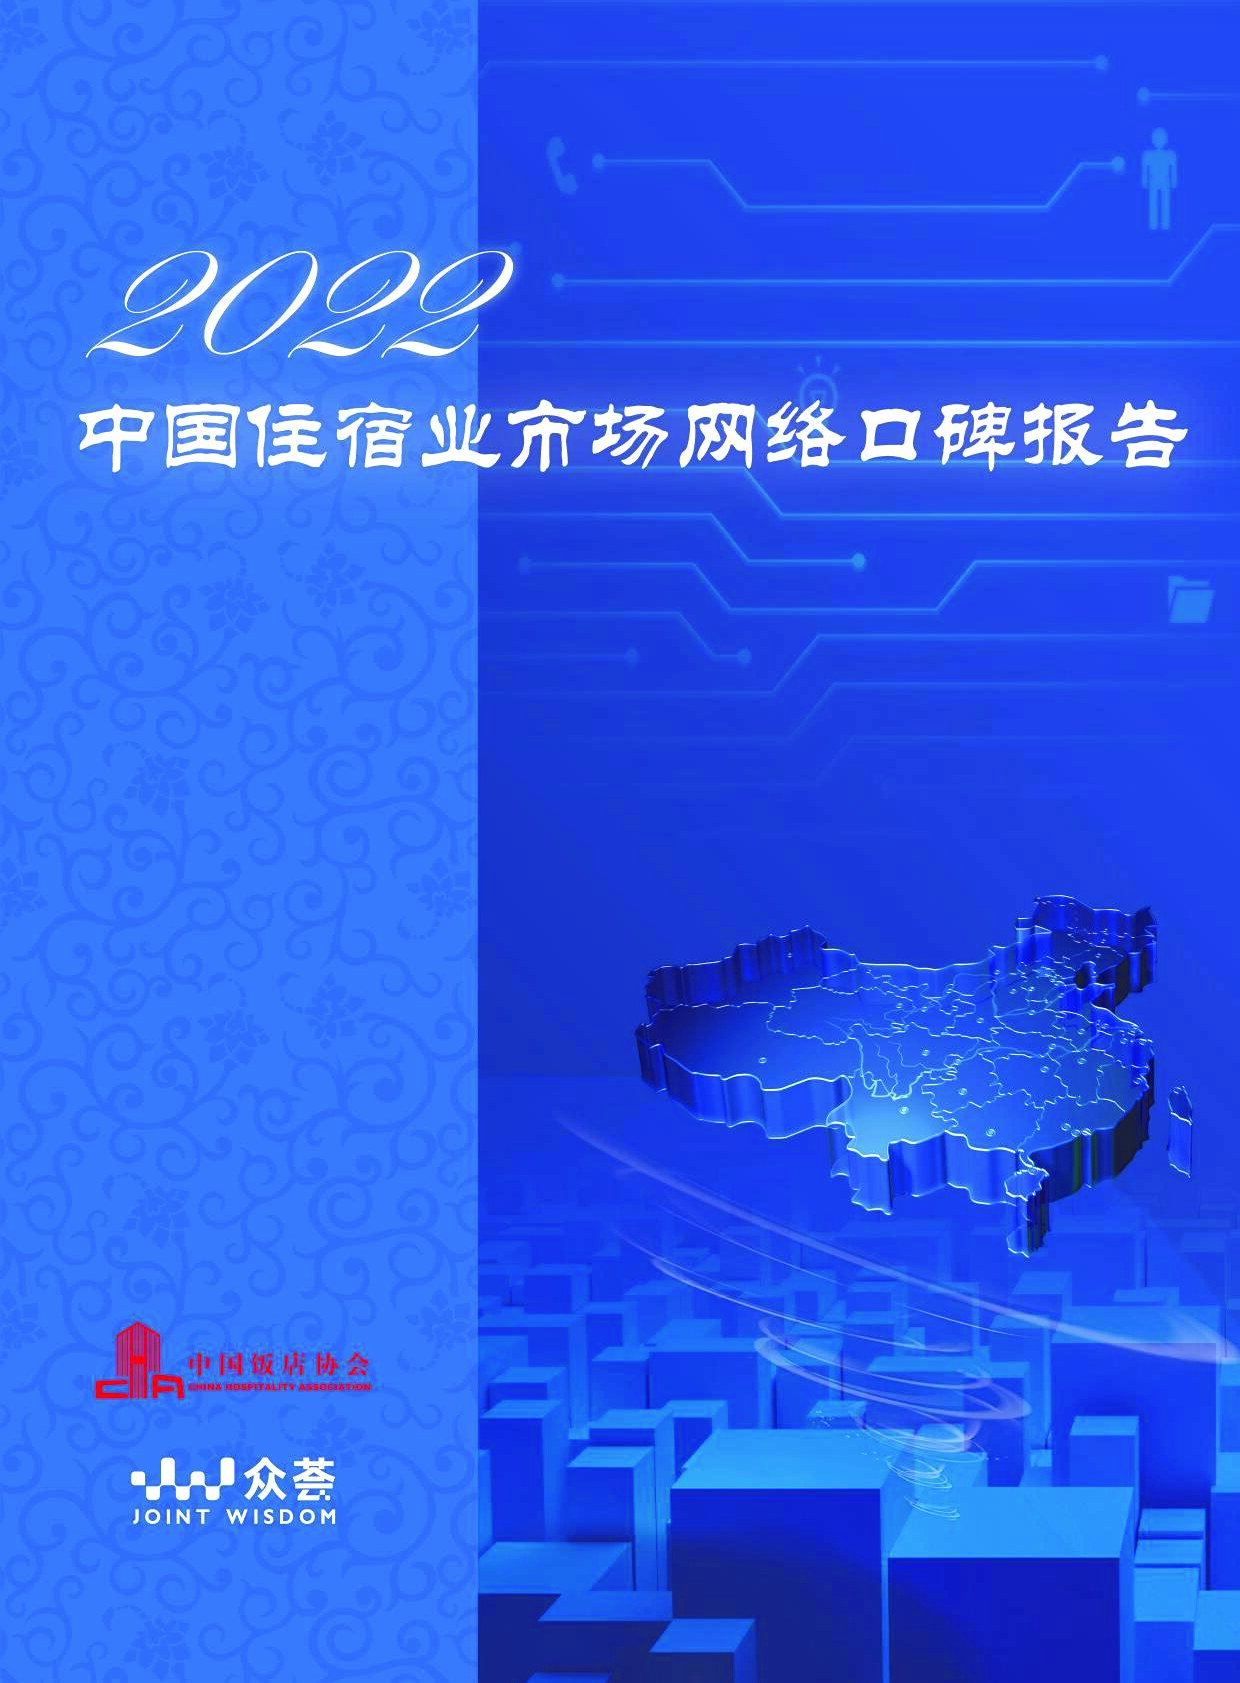 2022年度住宿业市场网络口碑报告-中国饭店协会-2022-43页